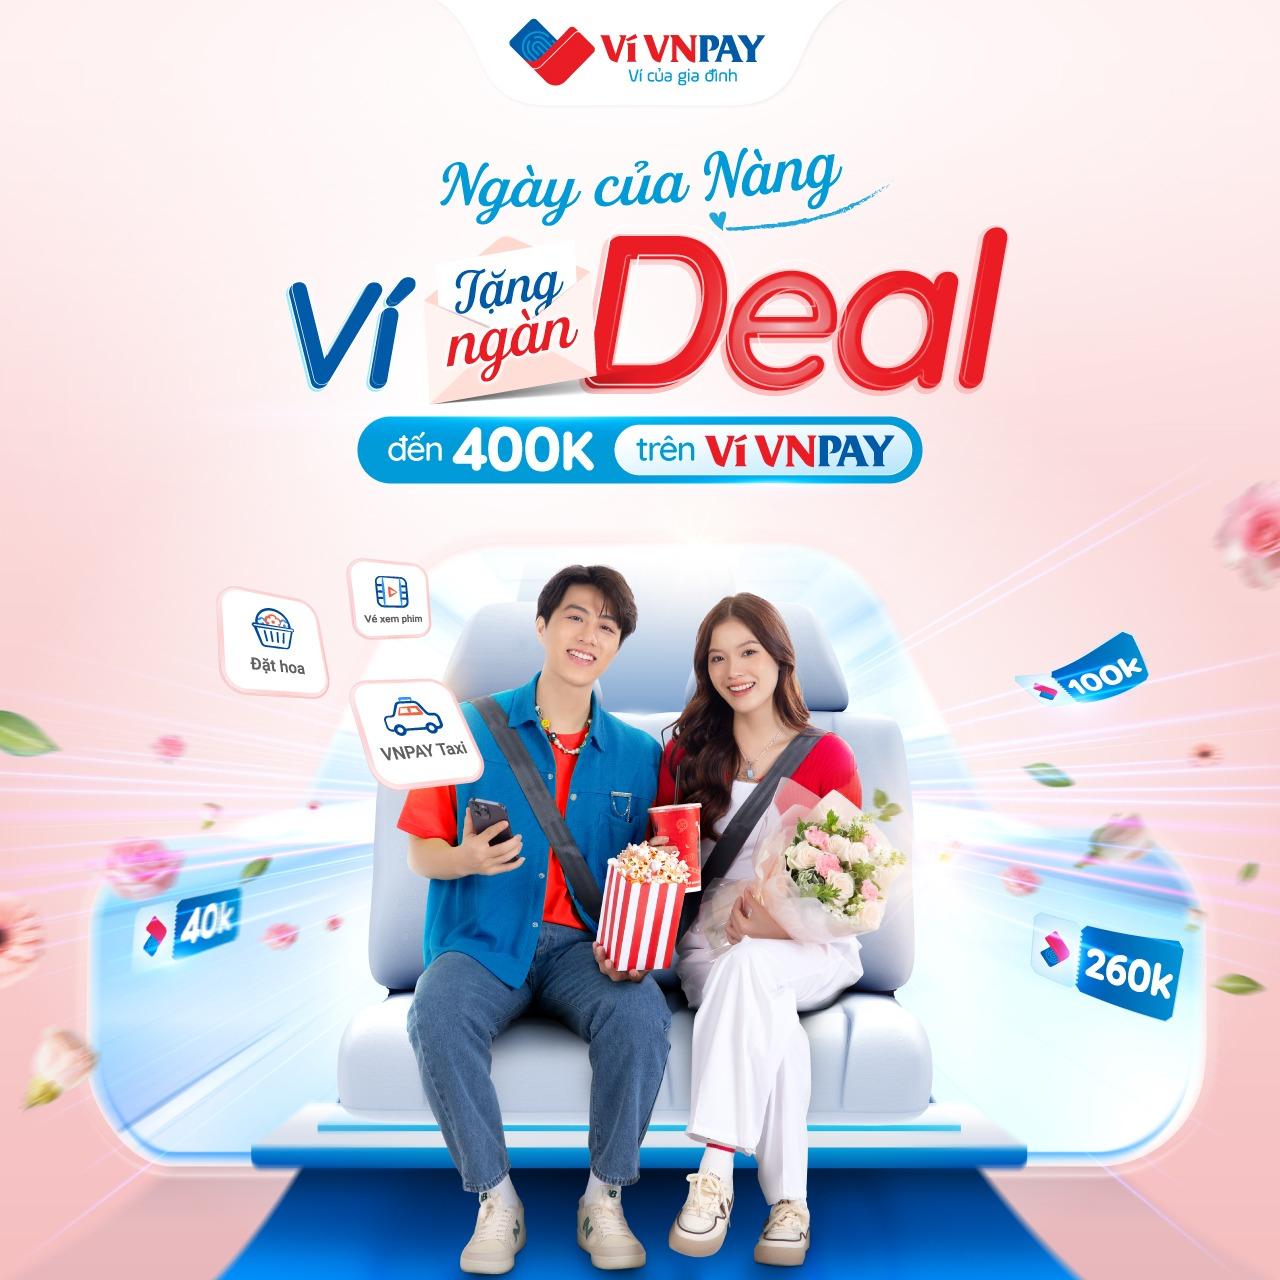 Ngày của Nàng - Ví tặng ngàn deal: Ưu đãi tới 400.000 đồng khi gọi VNPAY Taxi, đặt hoa và vé xem phim